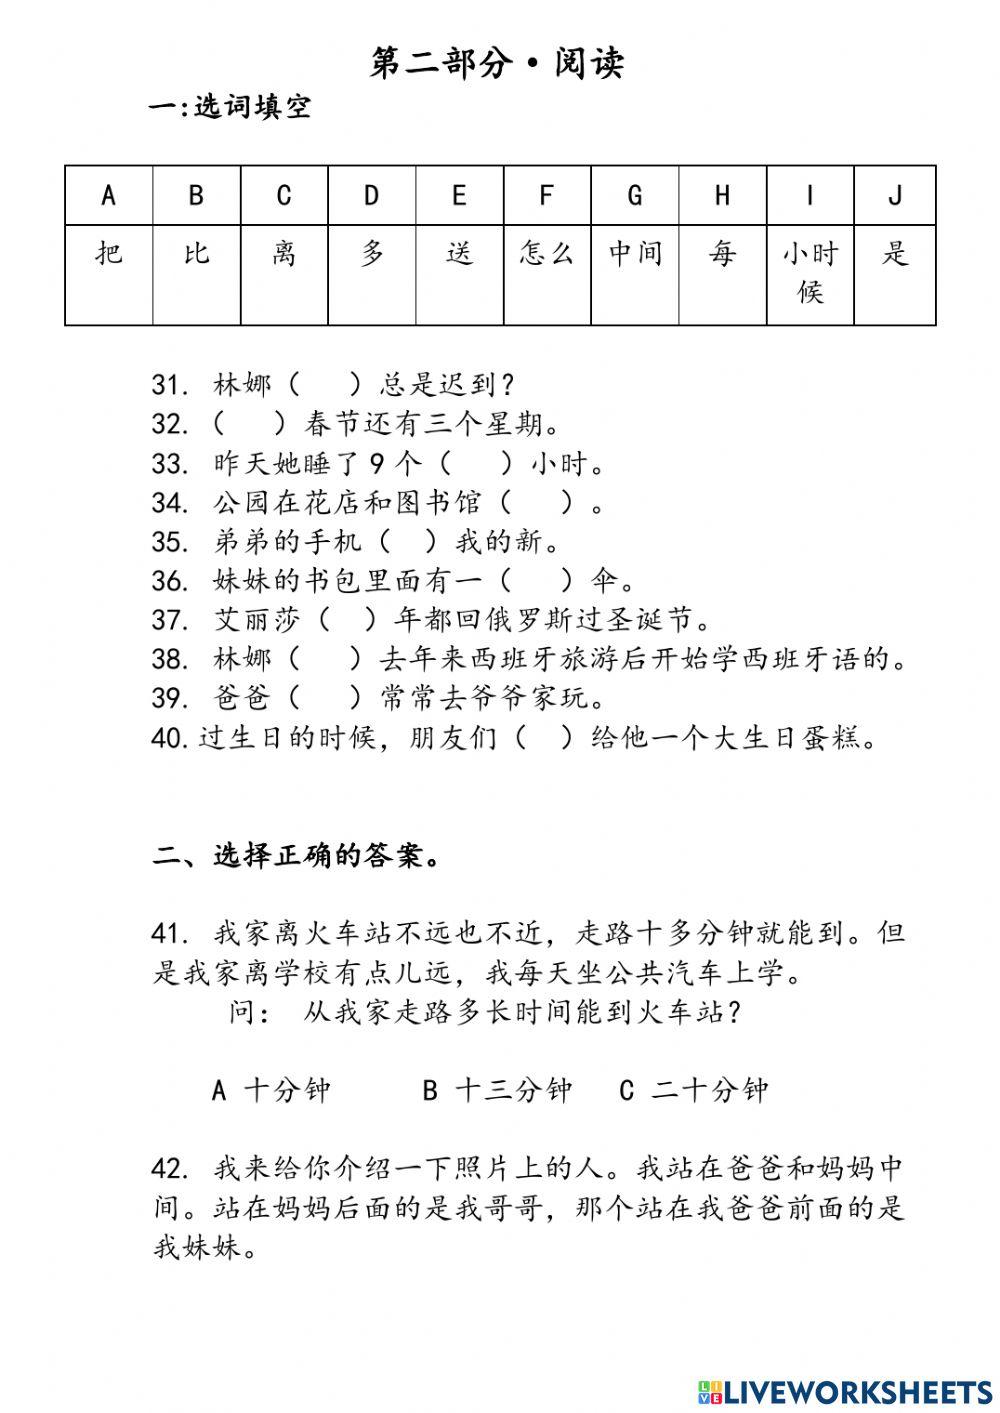 汉语之路2 - 第1到4课期中考试